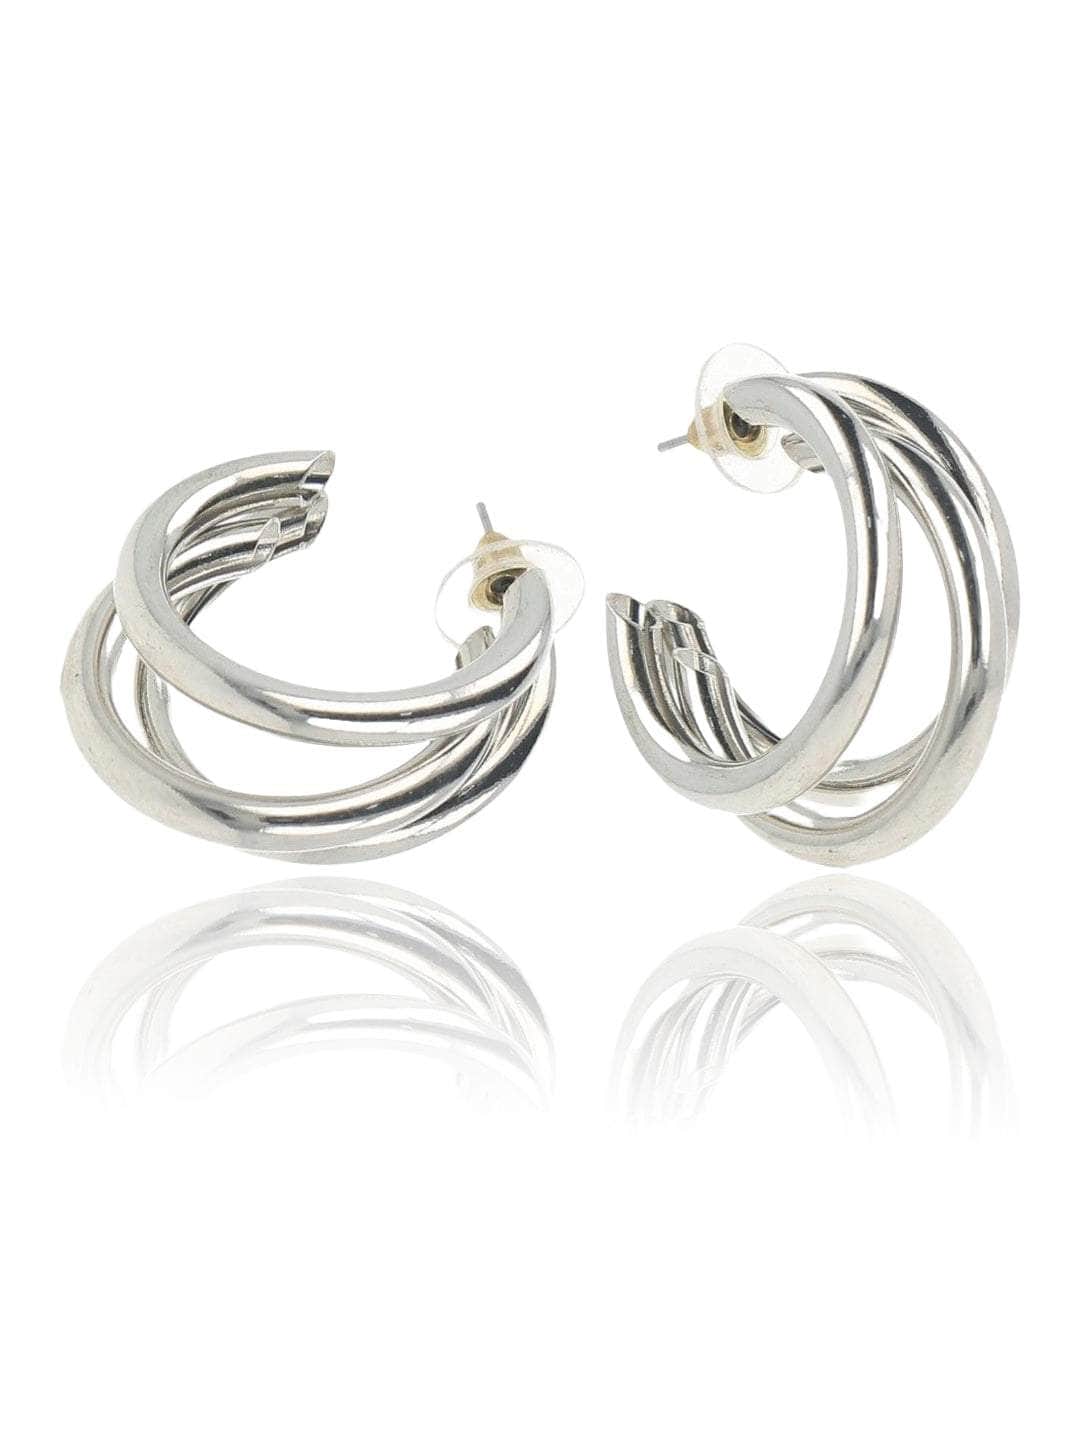 Ishhaara Huma Qureshi In Triple Hoop Earrings - Silver